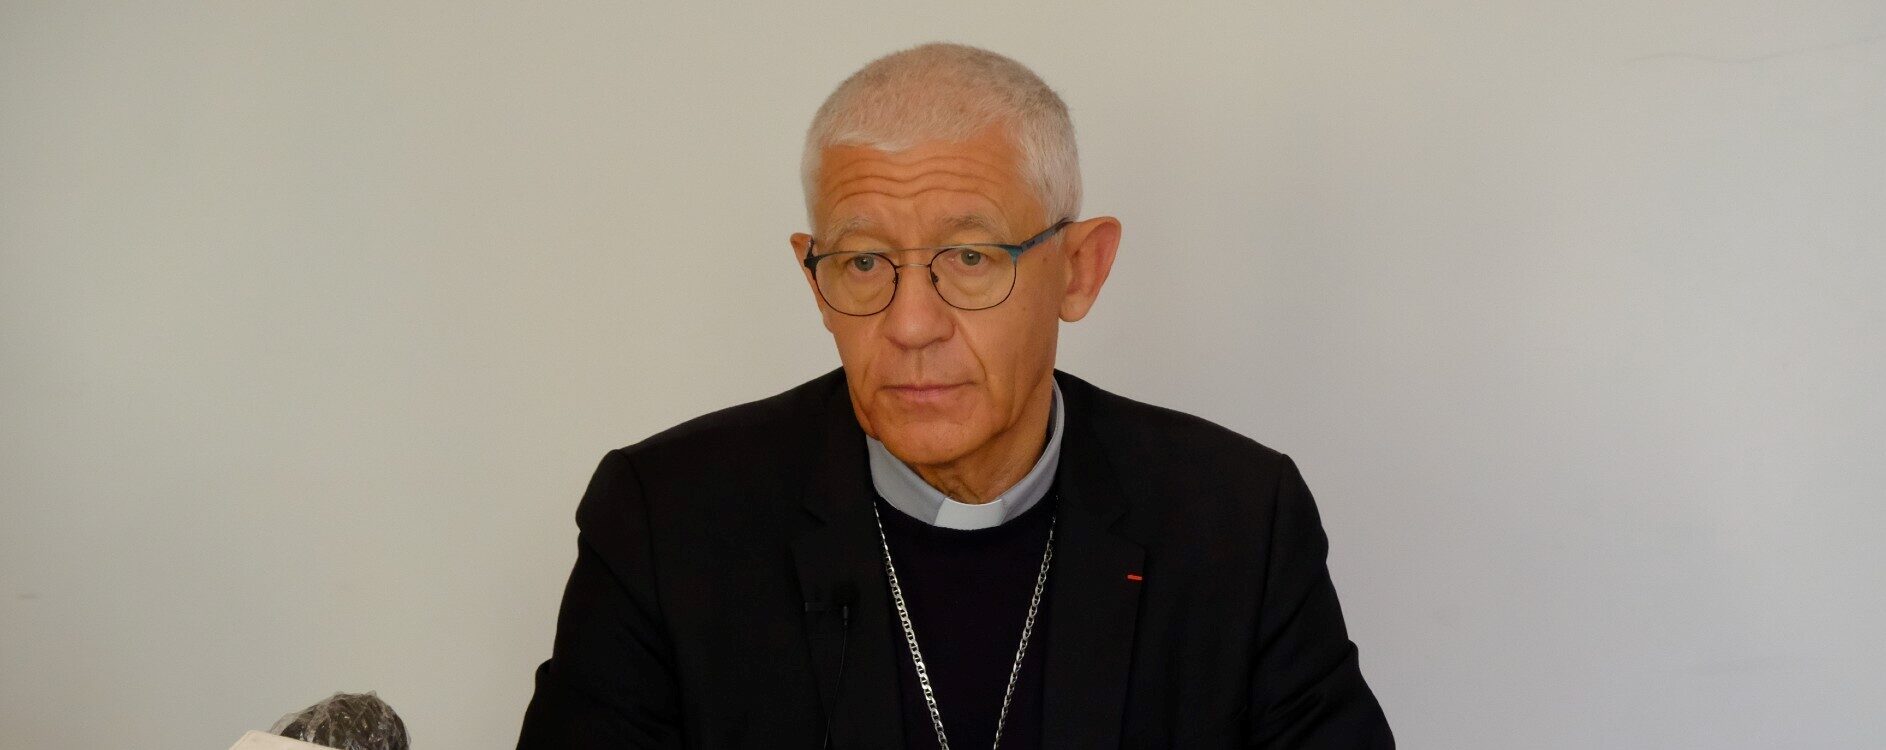 Par « sollicitude », le Pape ordonne une enquête au sein du diocèse de Strasbourg